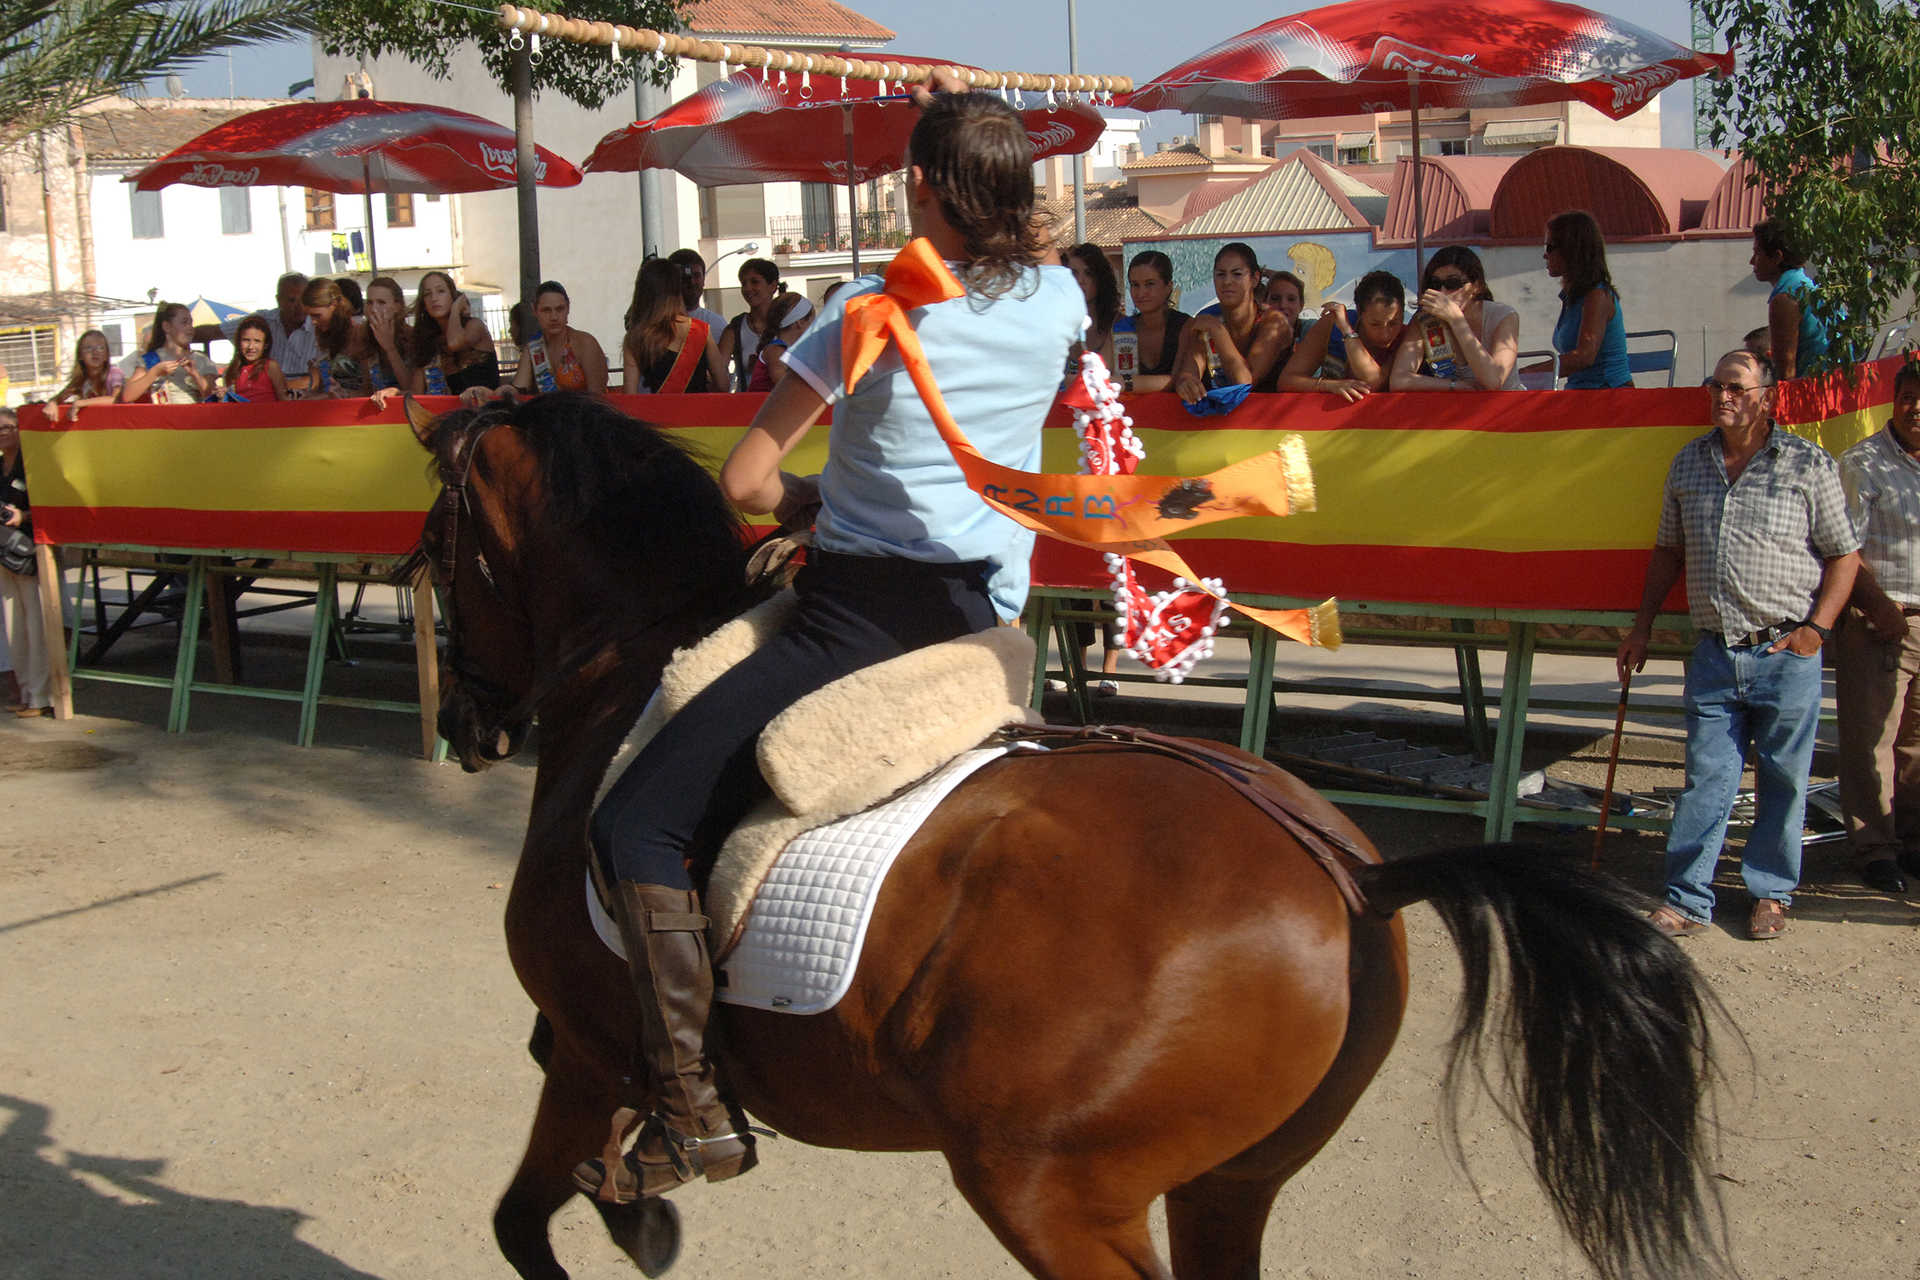 Fiestas Patronales de Segorbe. Fête d’intérêt touristique national.